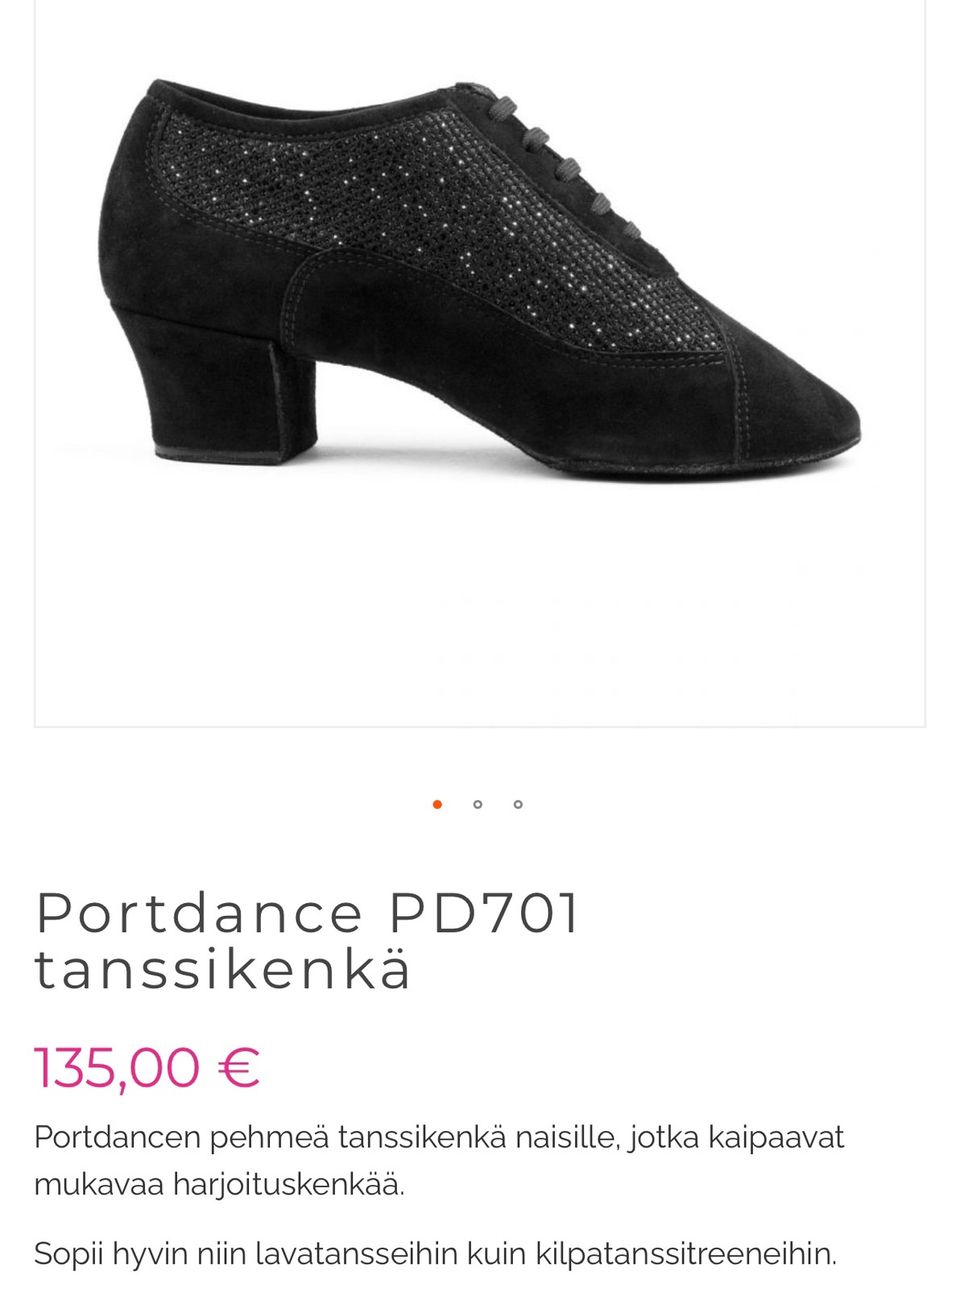 Portdance Premium tanssikengät